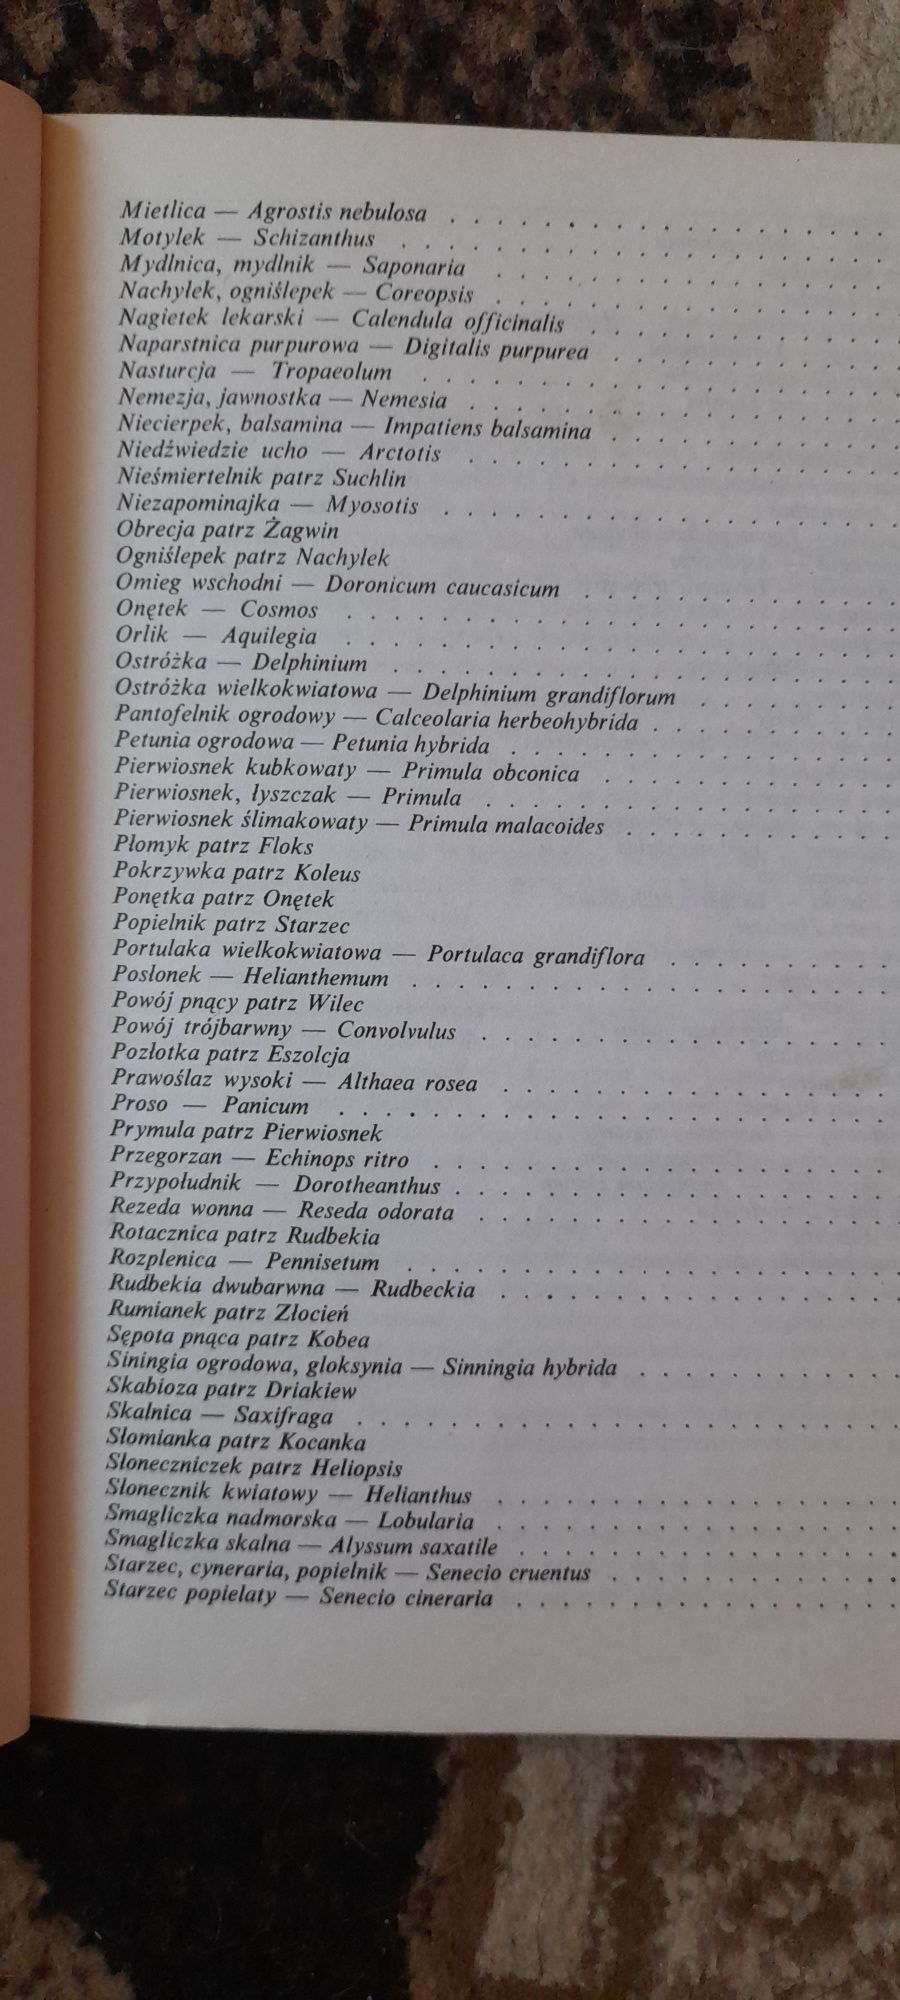 Katalog roślin ozdobnych rozmnażanych z nasion - I.Chwedoruk 1985